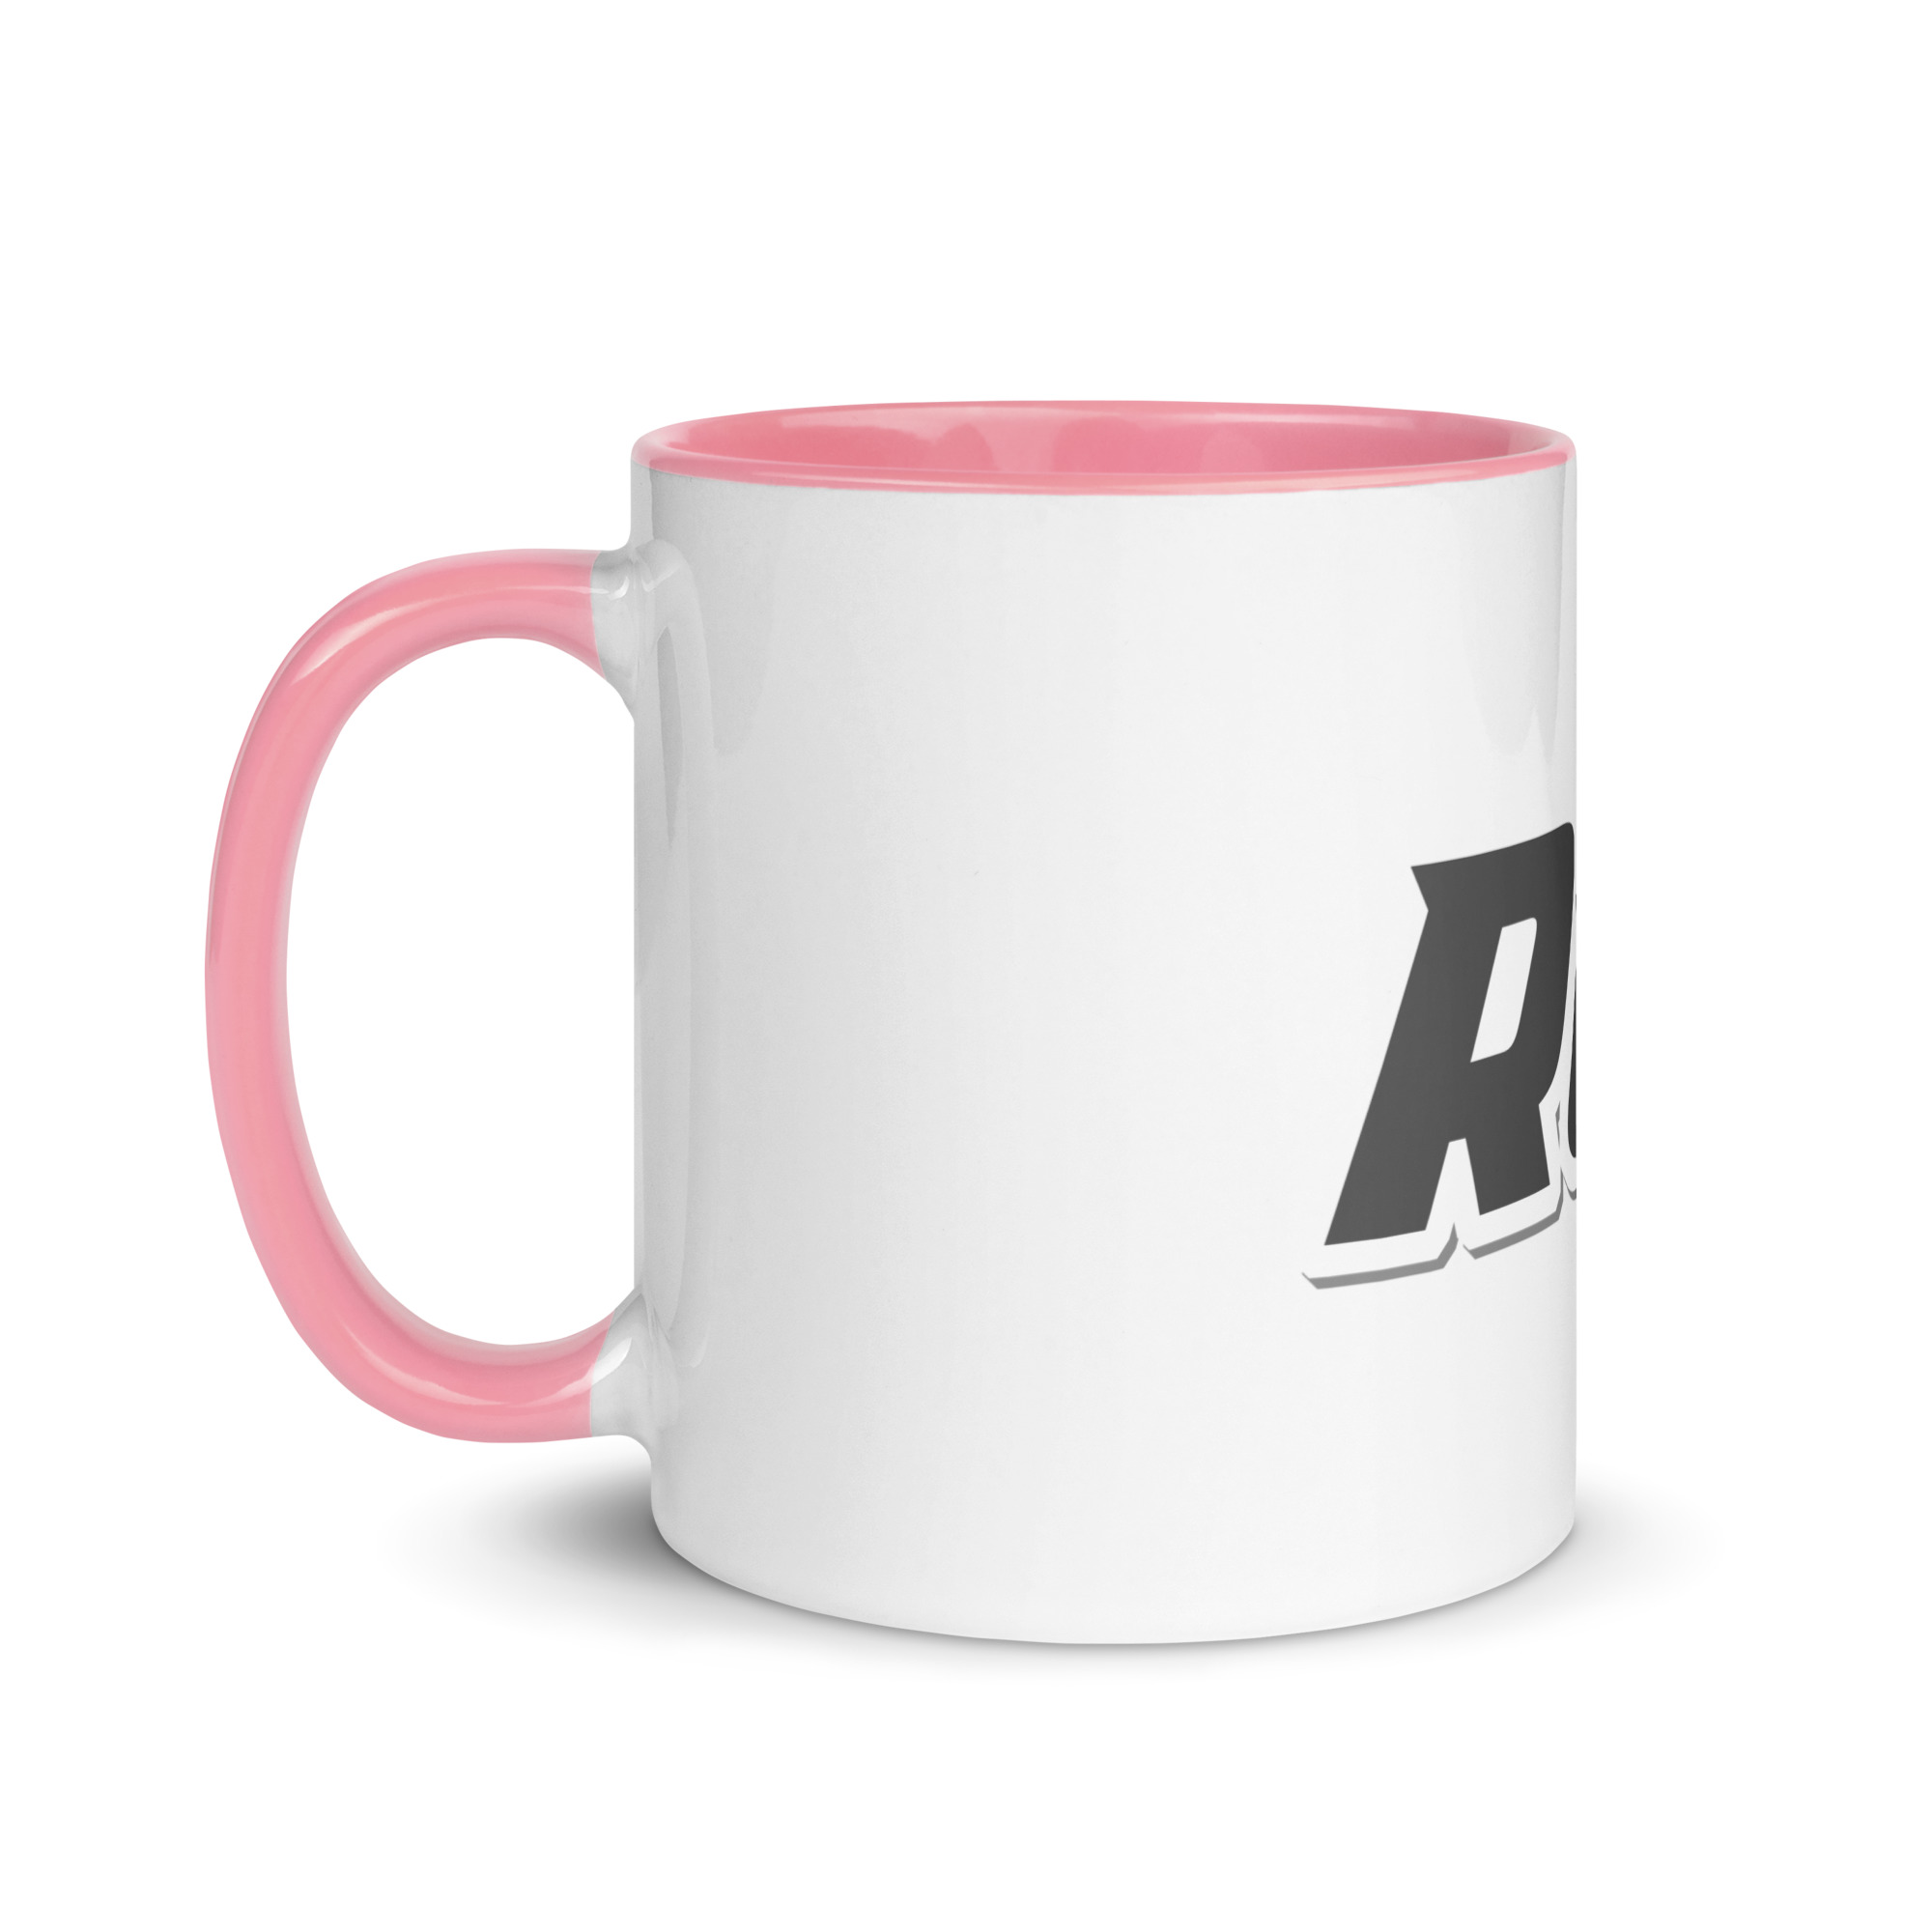 white-ceramic-mug-with-color-inside-pink-11-oz-left-6525b6484c9e2.jpg